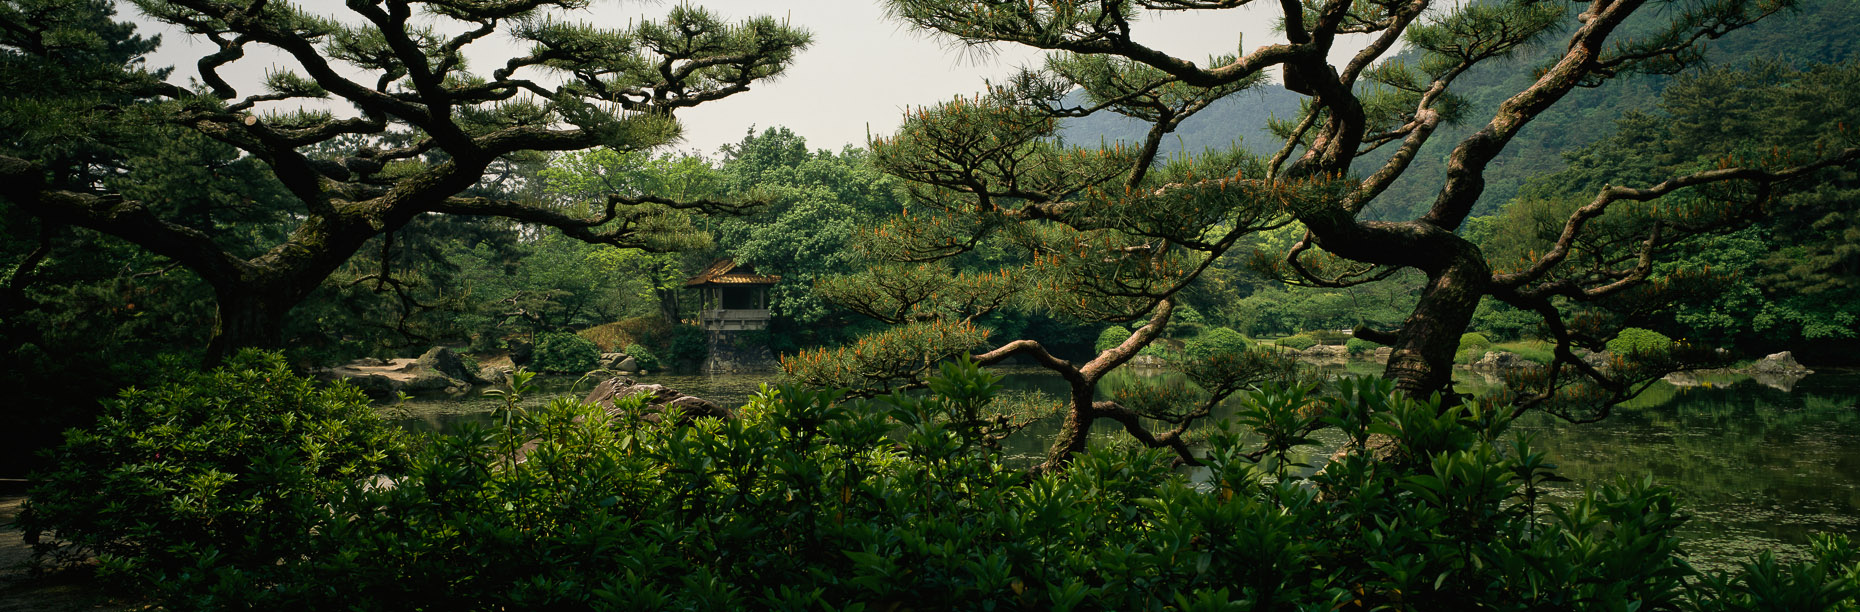 Japanese-Gardens-14.jpg